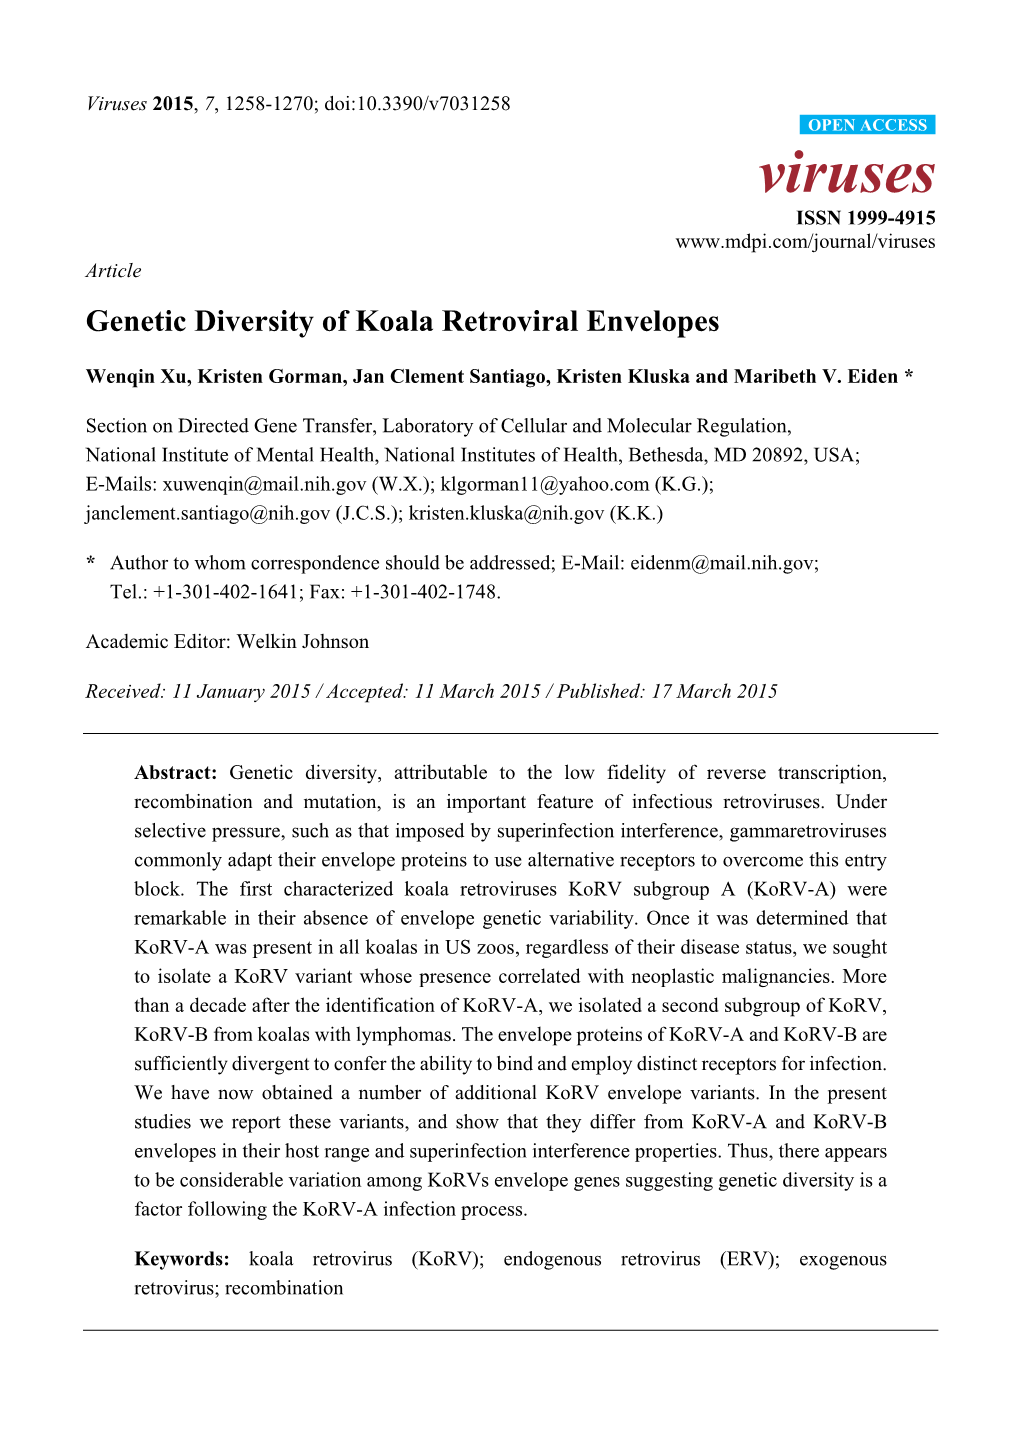 Genetic Diversity of Koala Retroviral Envelopes